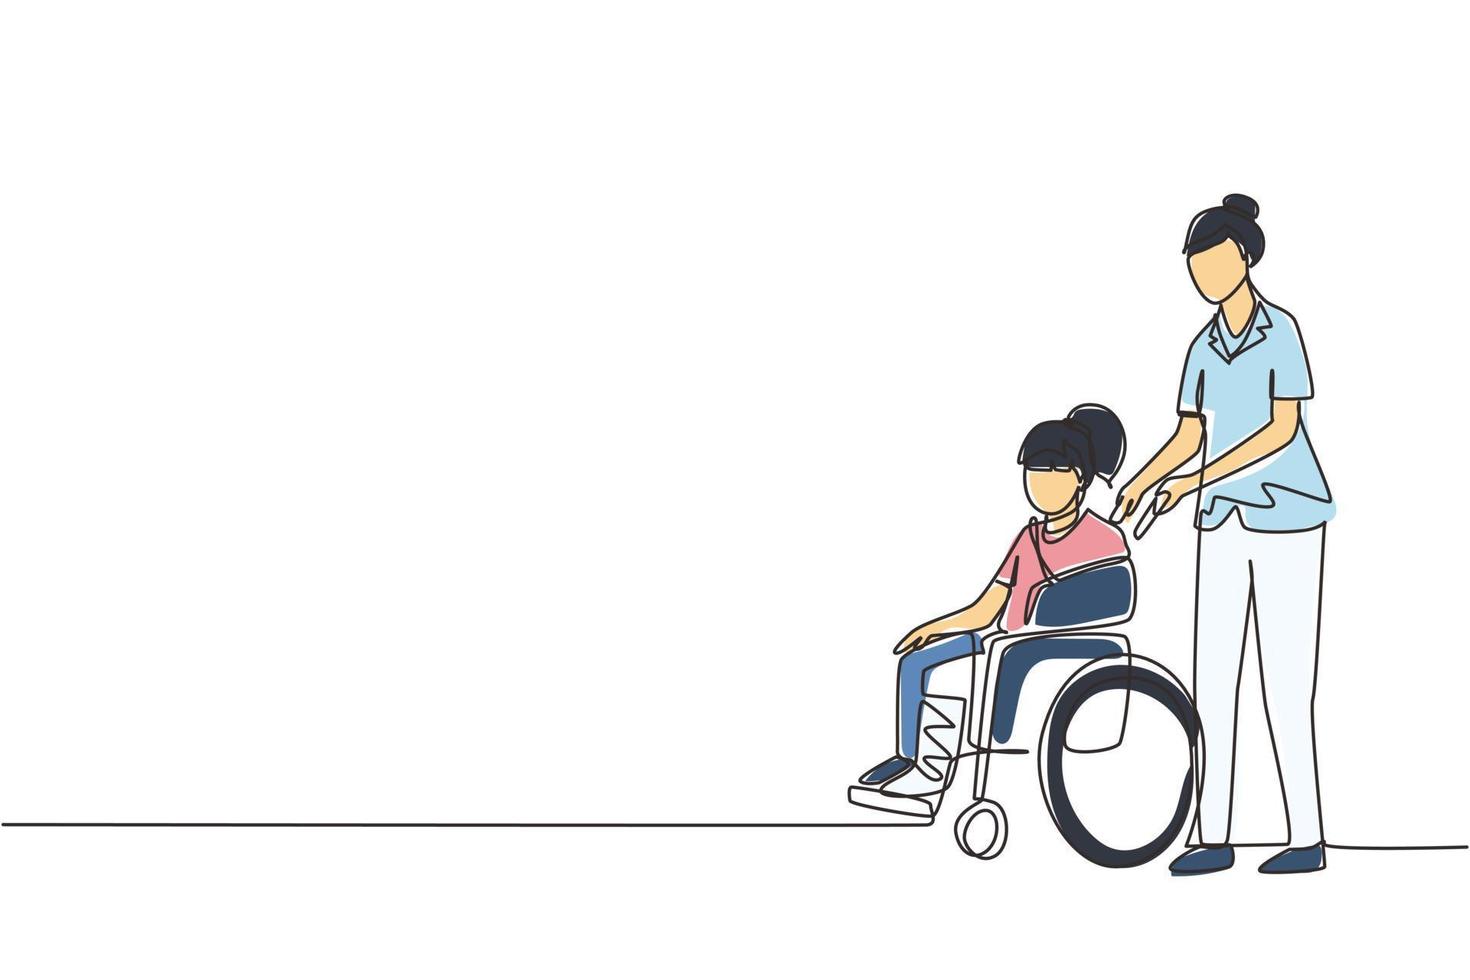 enkele doorlopende lijntekening paramedicus hulp gehandicapt meisje in rolstoel in transport. tijd samen doorbrengen met plezier, gelijke kansen. vrijwillige hulp. één lijn tekenen ontwerp vector